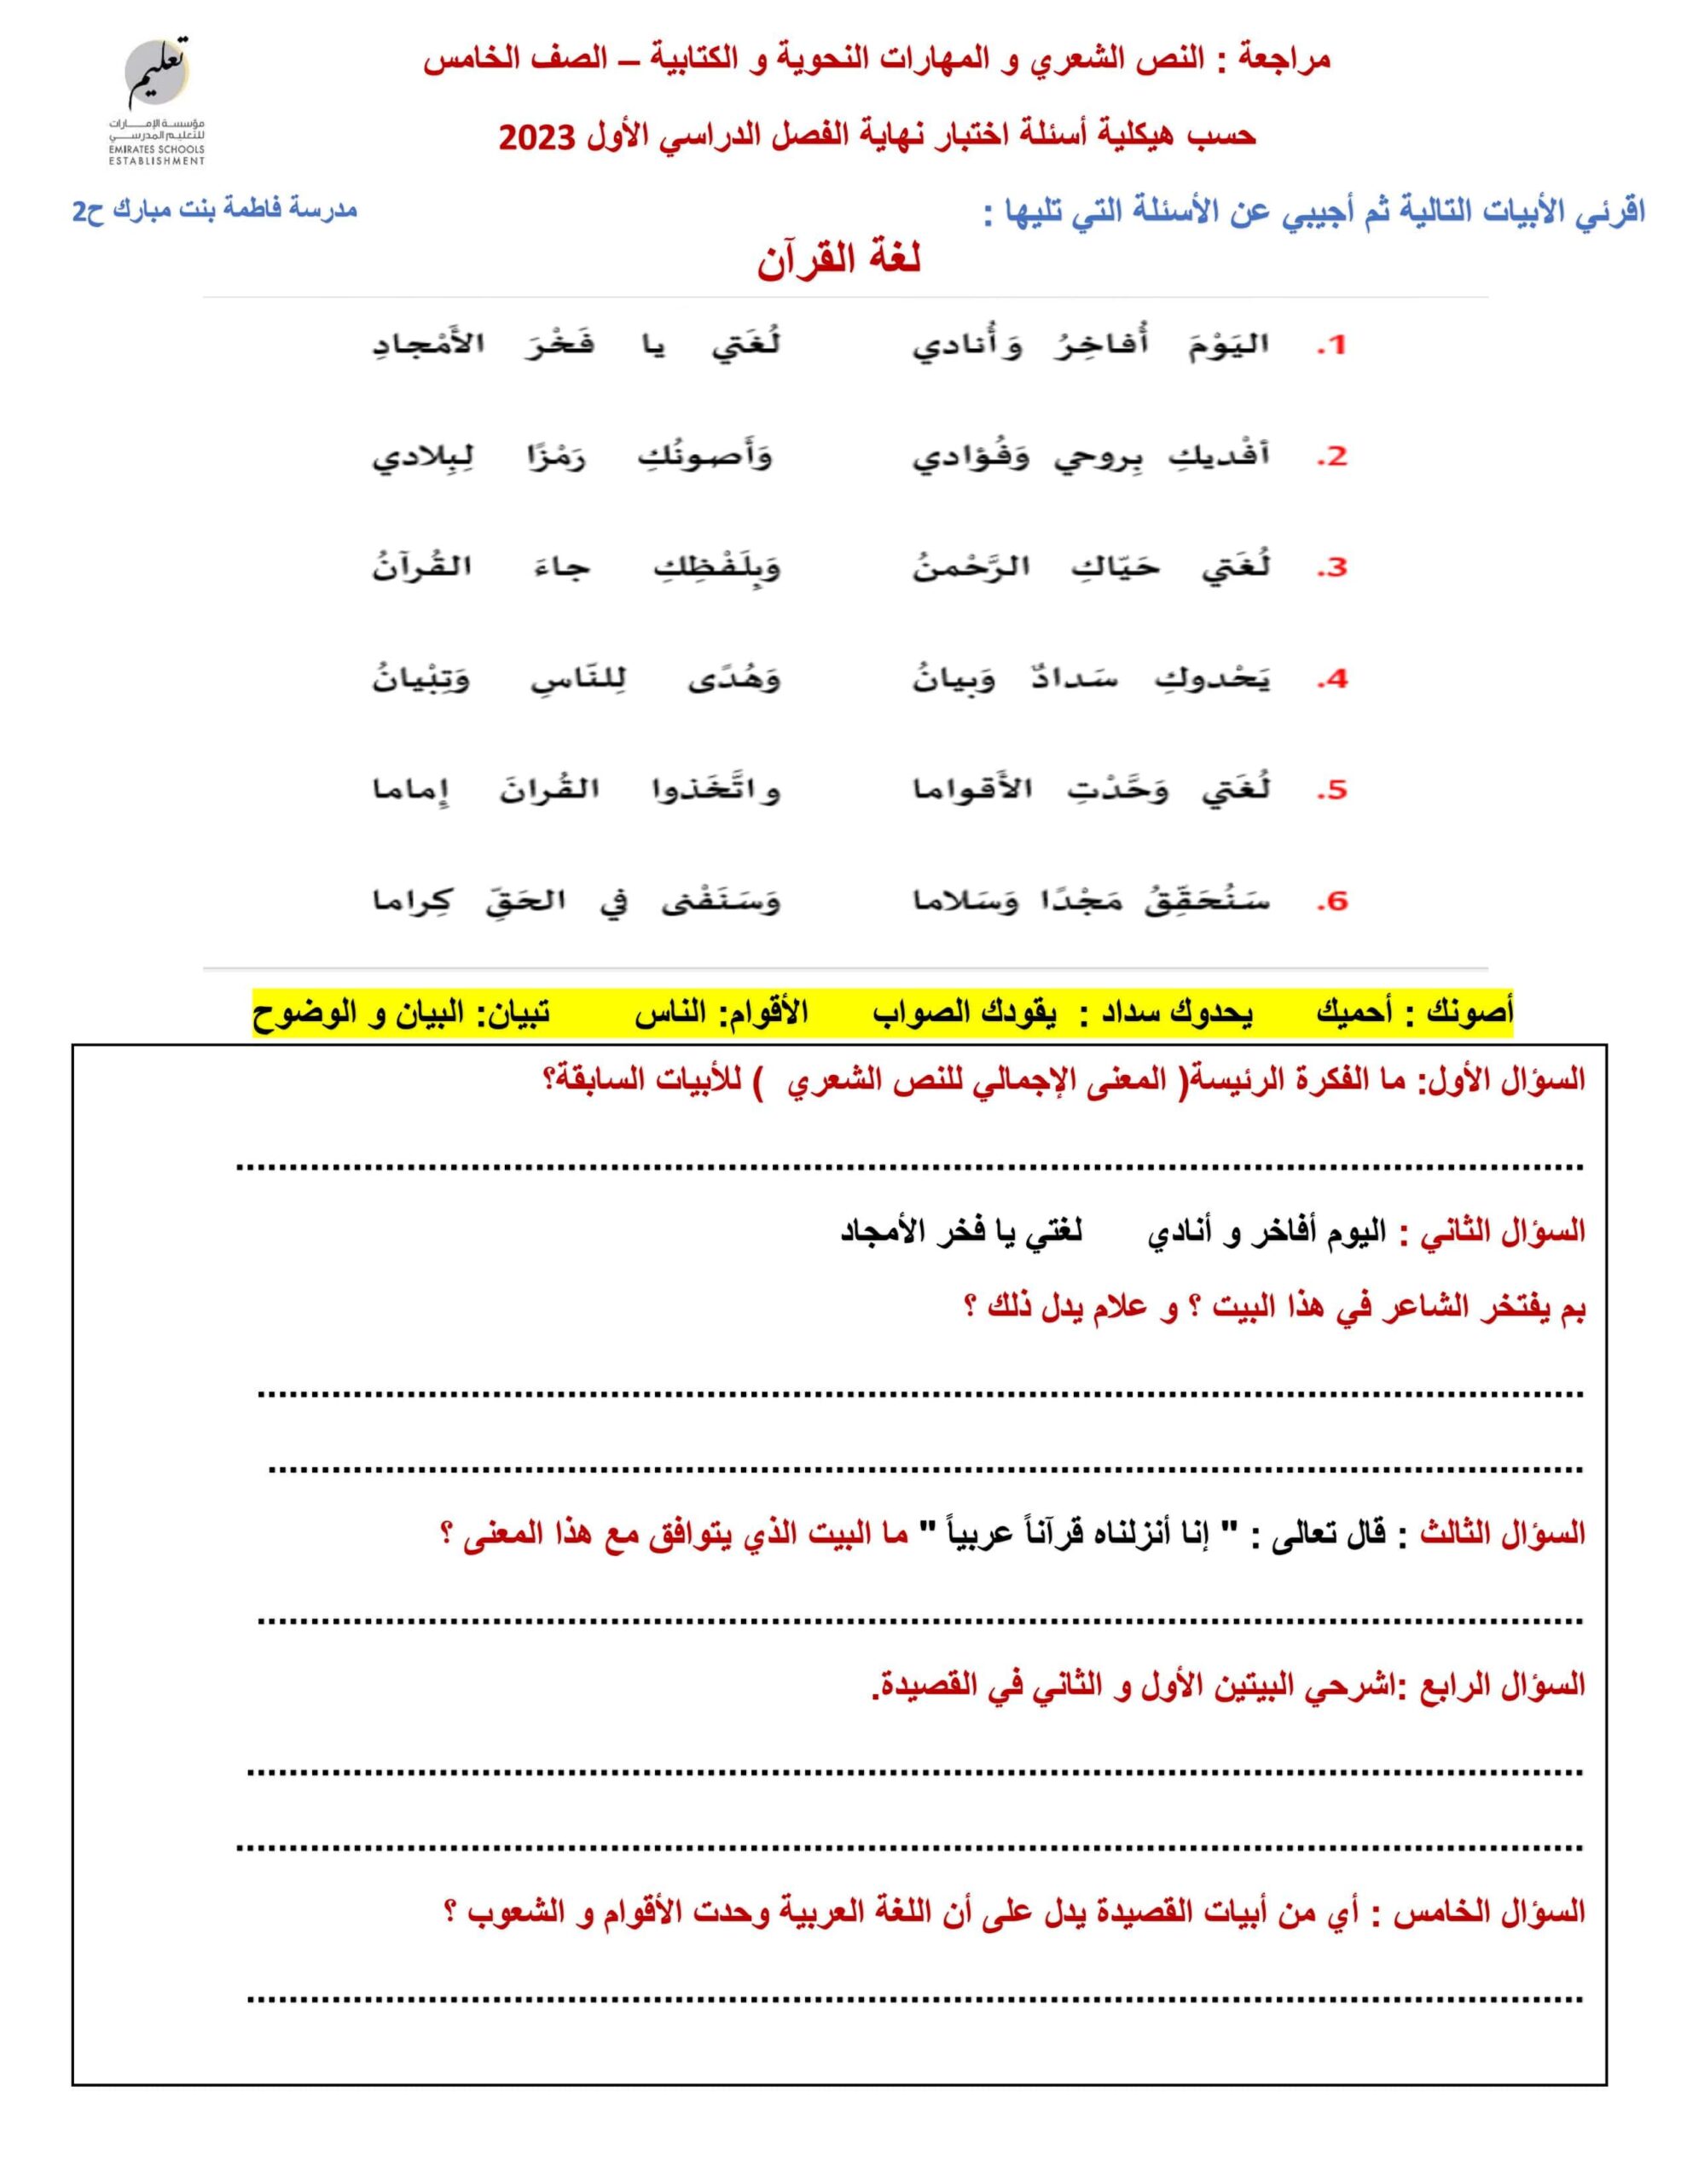 مراجعة النص الشعري والمهارات النحوية والكتابية اللغة العربية الصف الخامس 